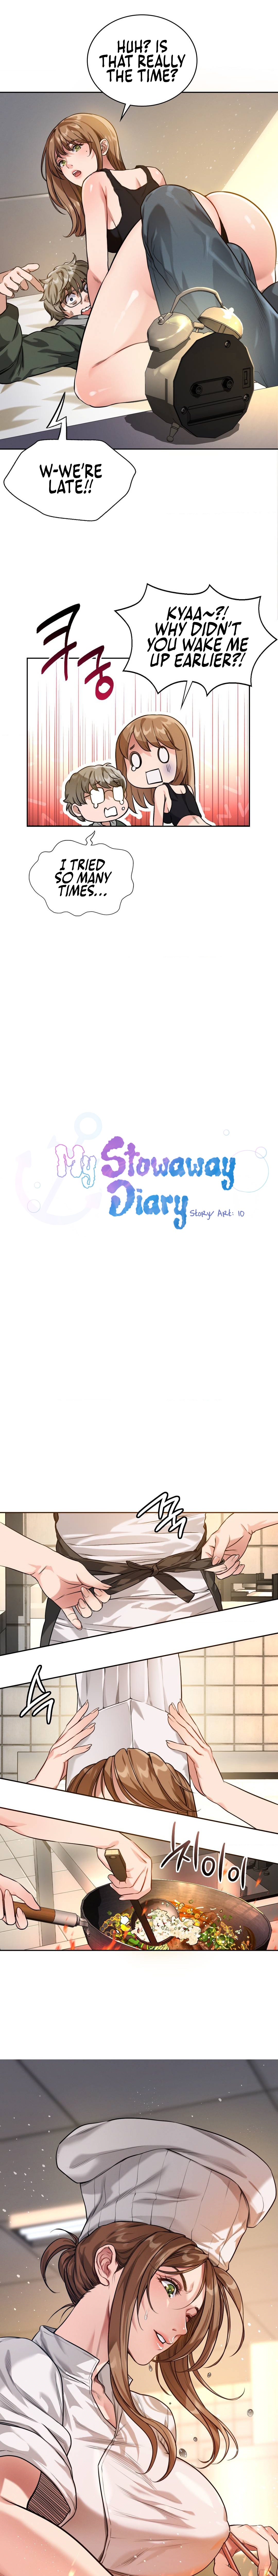 My Stowaway Diary NEW image